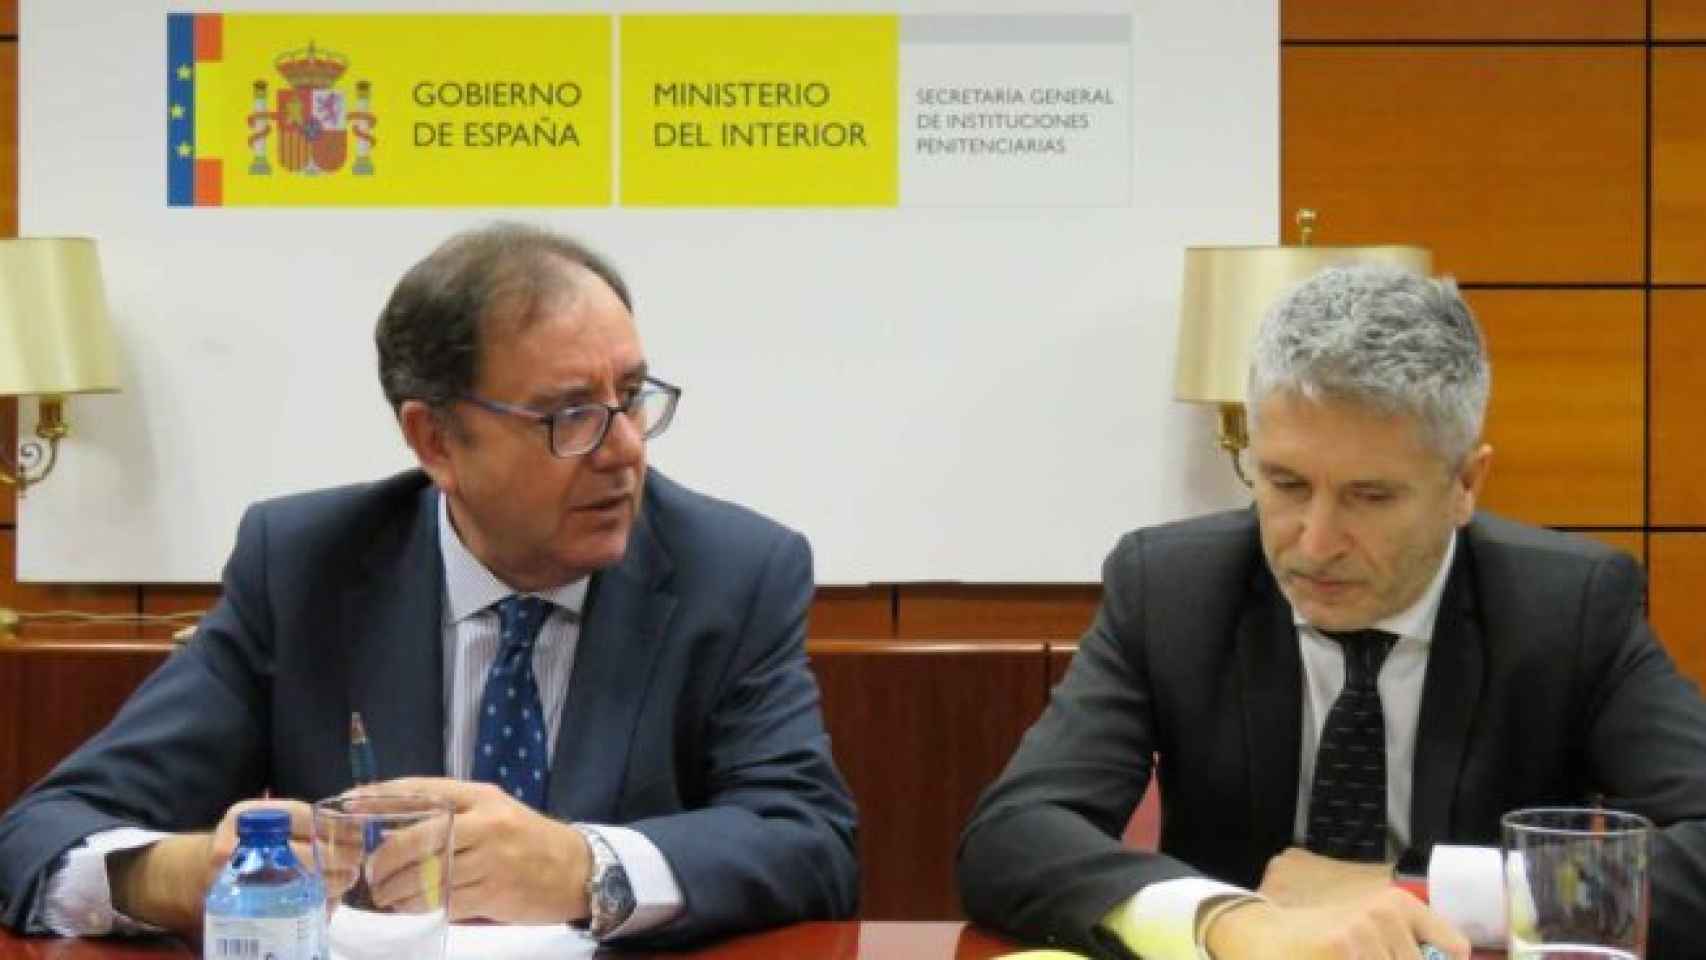 Ángel Luis Ortiz, secretario general de Instituciones Penitenciarias, con el ministro Marlaska.